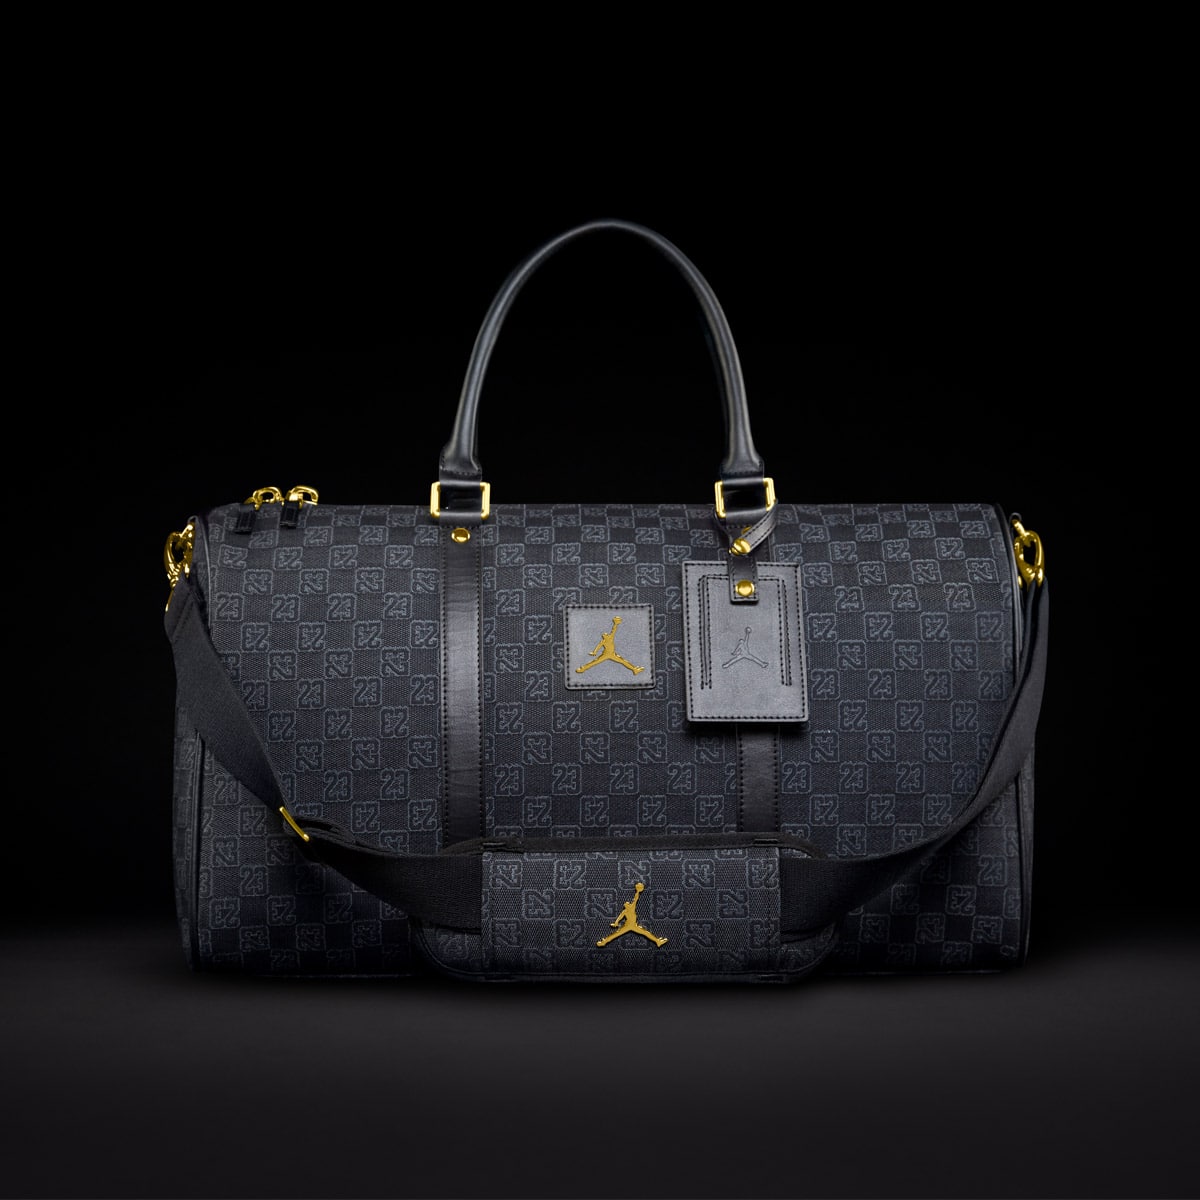 Nike Jordan Brand Monogram Duffle Bag